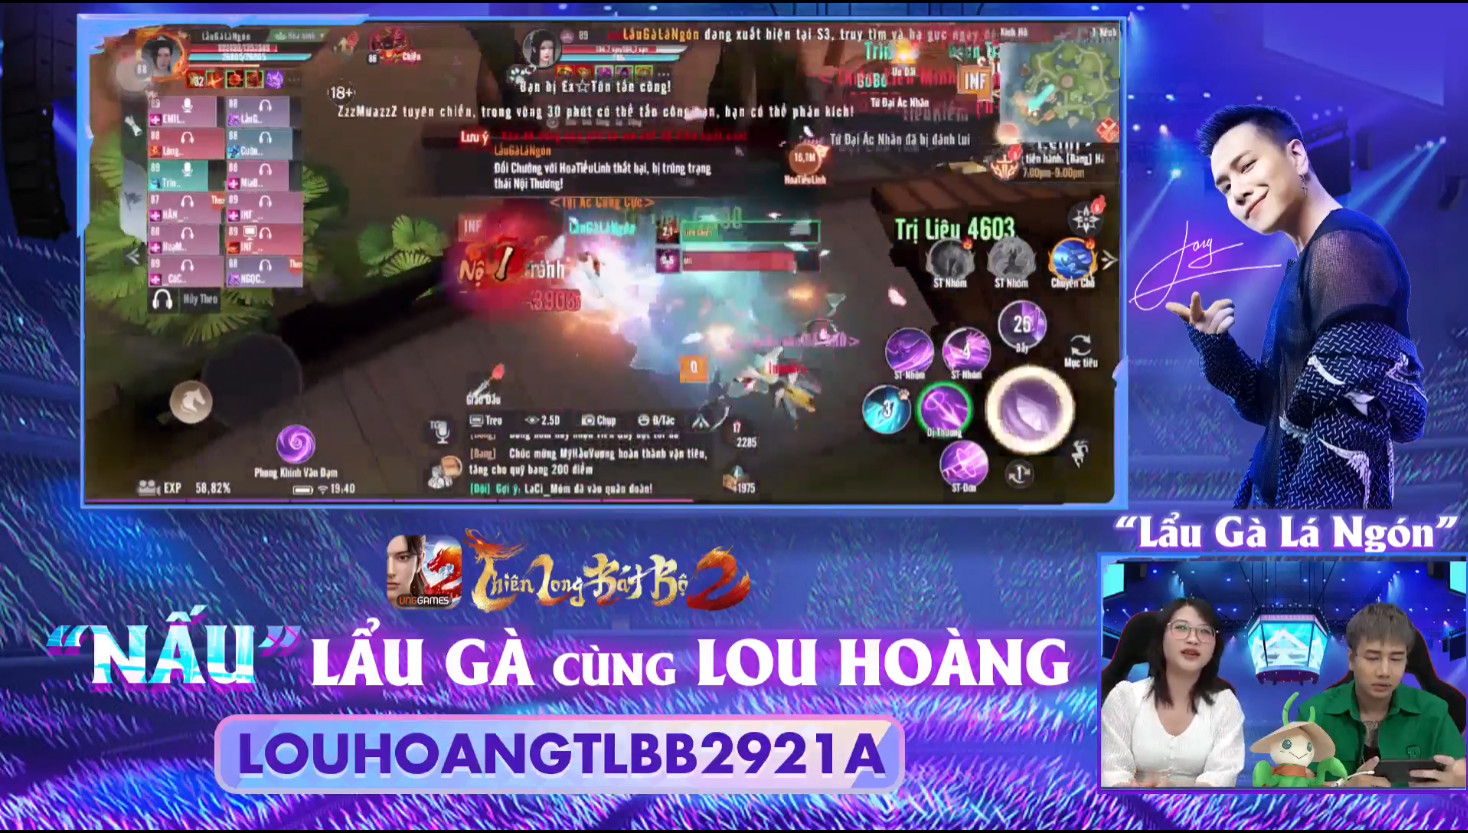 Lou Hoàng giao lưu cùng Thiên Long Bát Bộ 2 VNG: “Chơi game là nguồn cảm hứng để viết nhạc” - Ảnh 5.